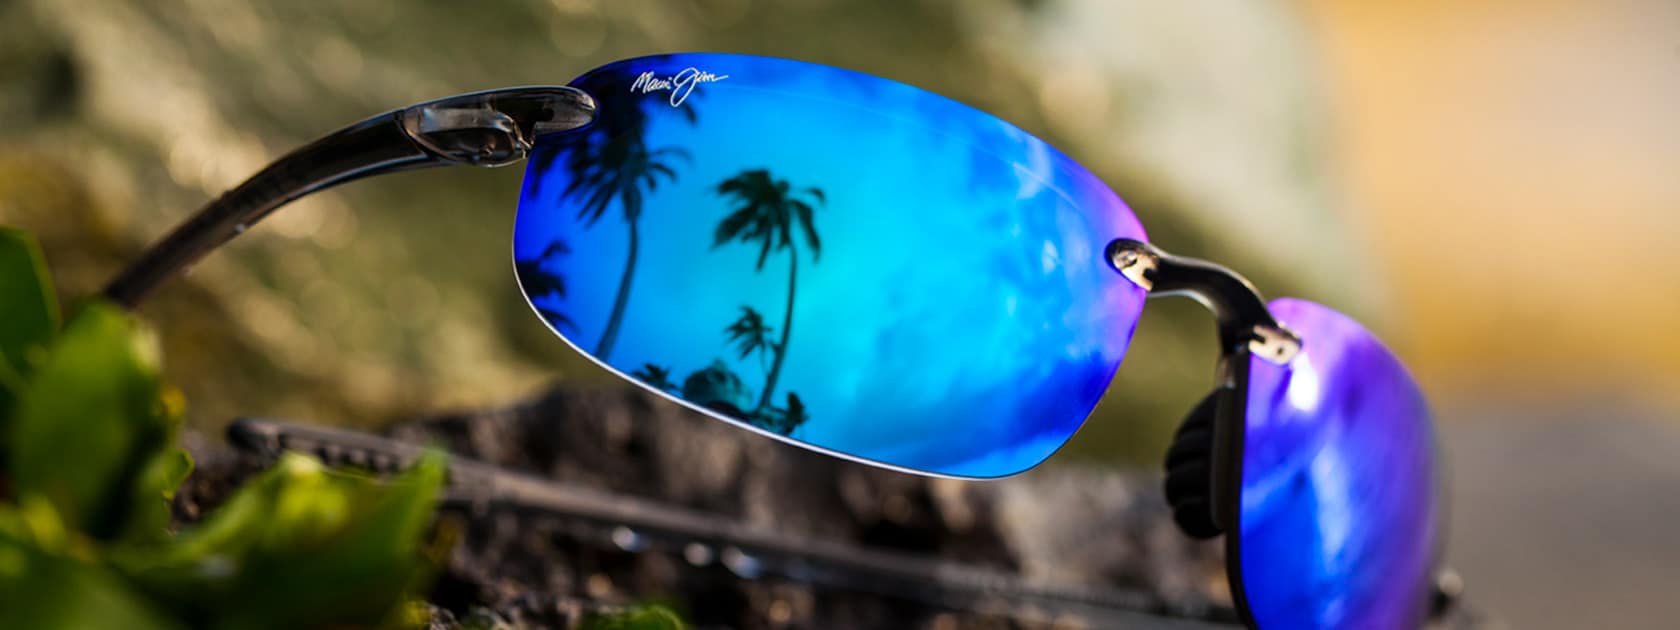 Sonnenbrille mit rauchgrauer Fassung und blauen Gläsern, in denen sich Palmen spiegeln